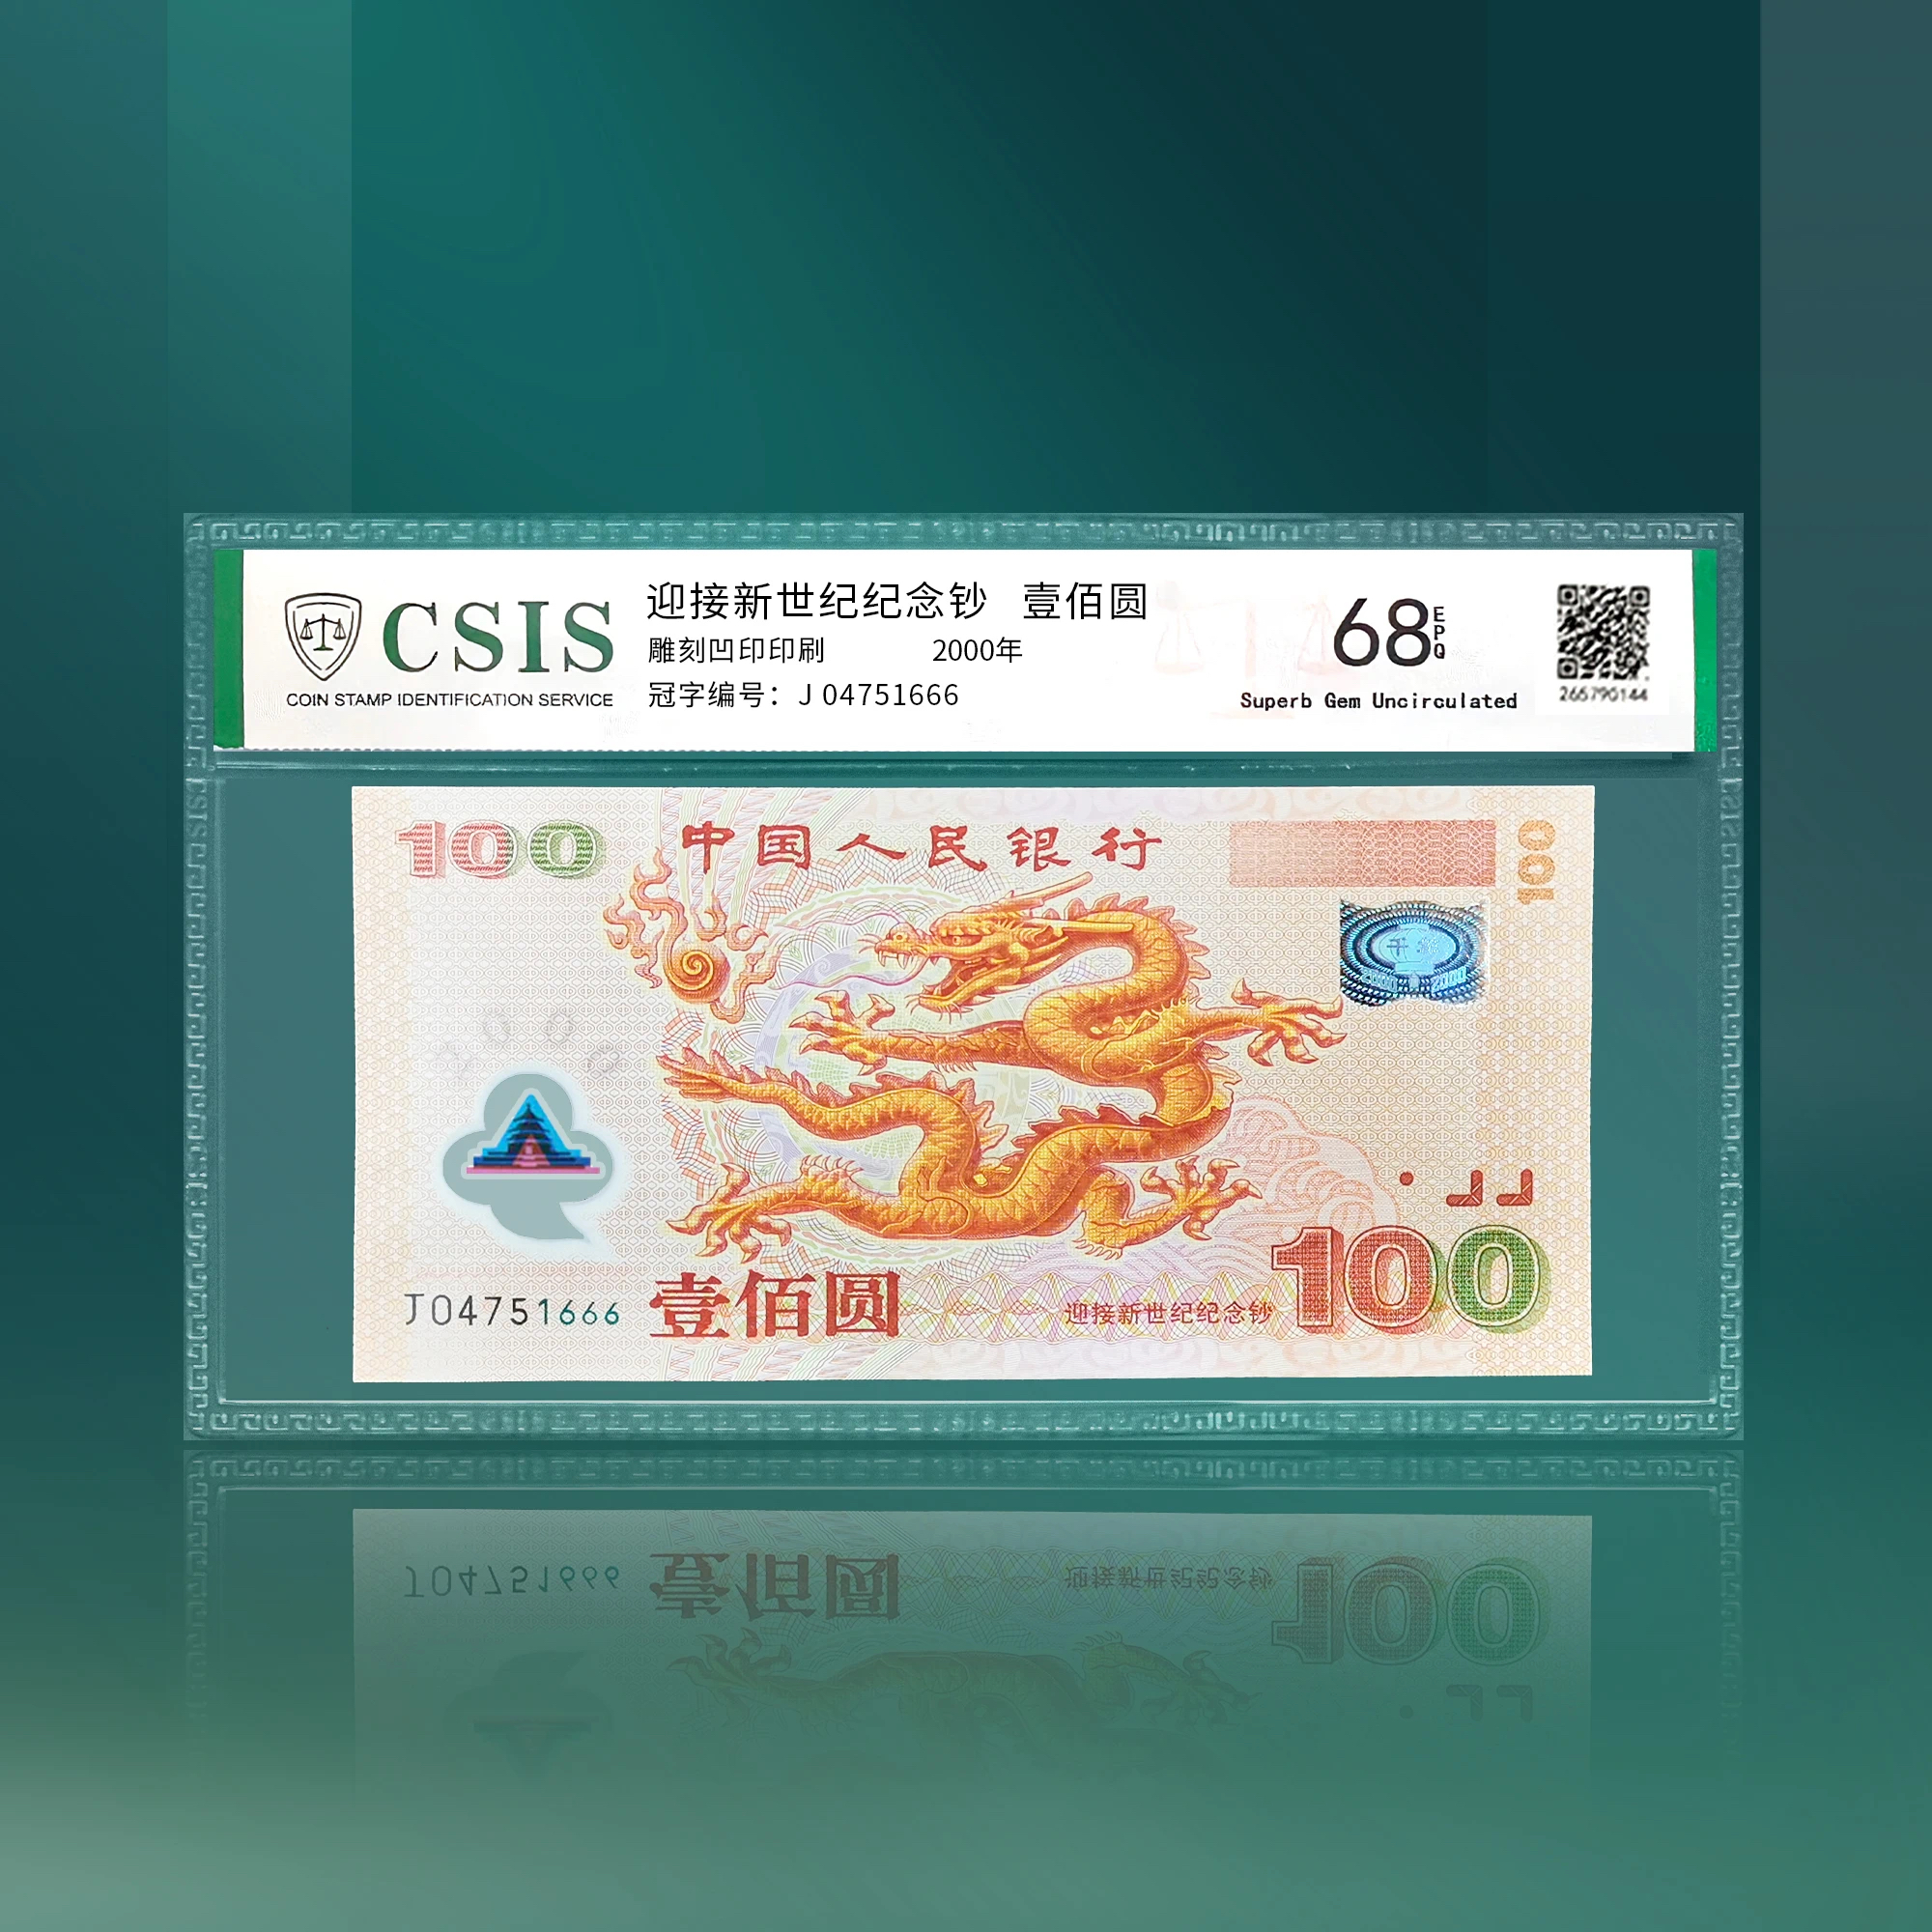 【福利】2000年迎接新世纪纪念钞 封装评级68分